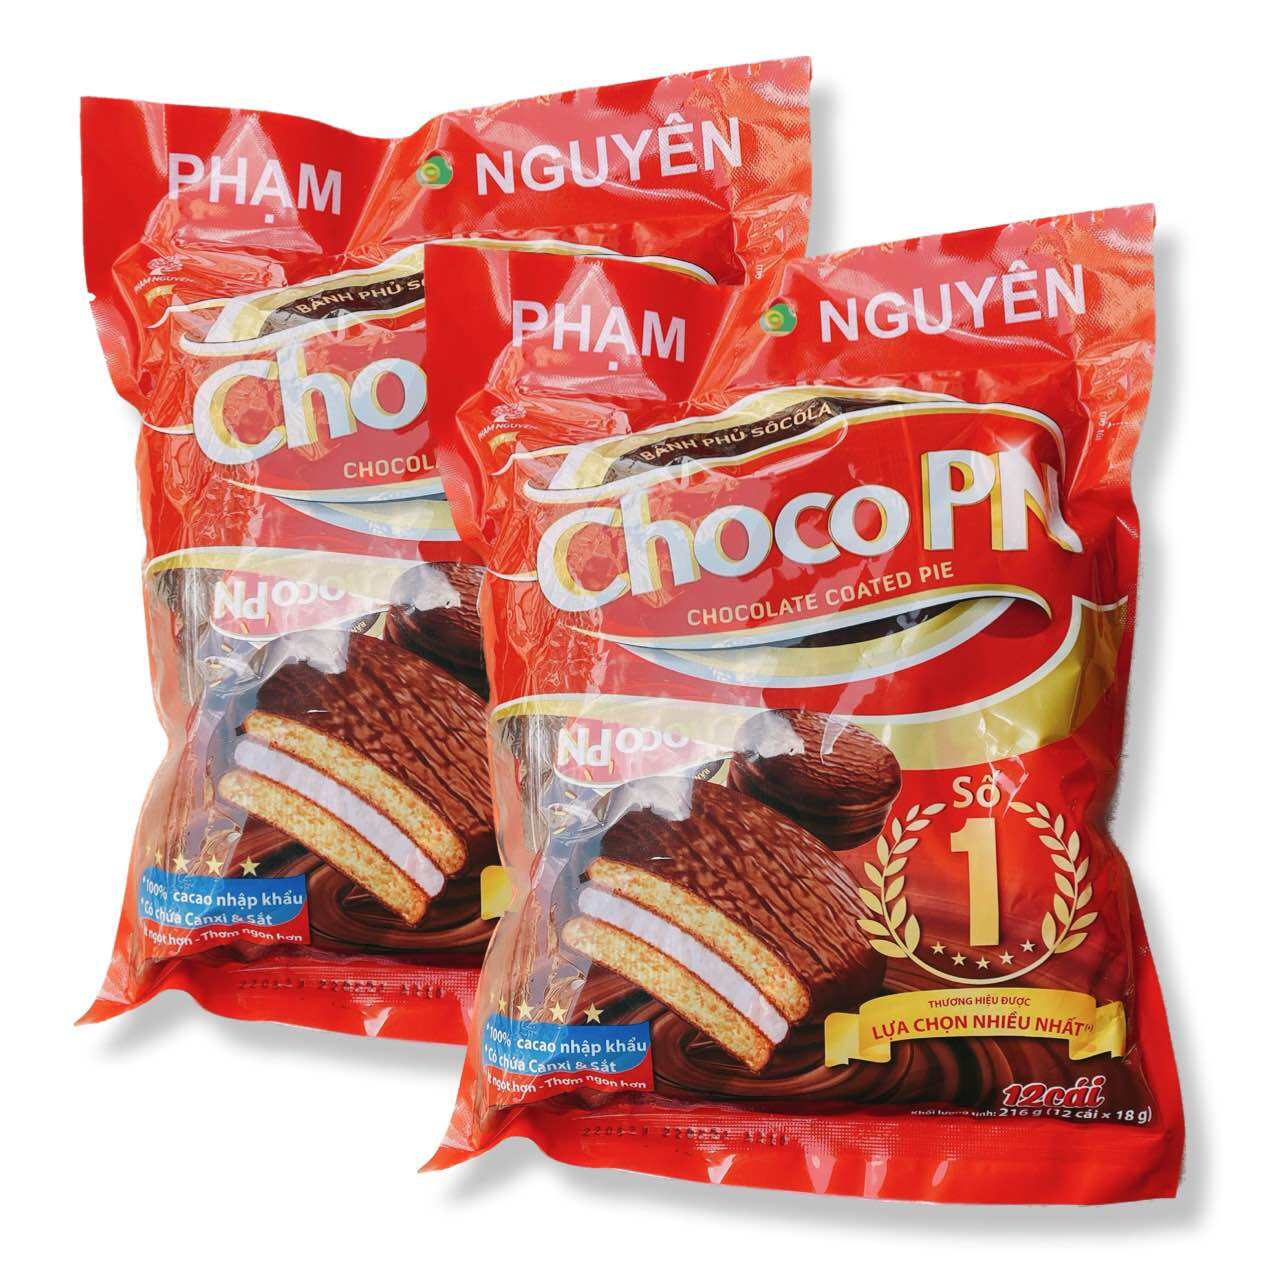 [ ĂN LÀ GHIỀN - GIÁ DÙNG THỬ] Combo 02 Bịch (mỗi bịch 12 cái ) Bánh Chocopie Phạm Nguyên Asoco truyền thống xuất khẩu Thái Lan (Date mới: 12 tháng) có lựa chọn số lượng khi thanh toán.